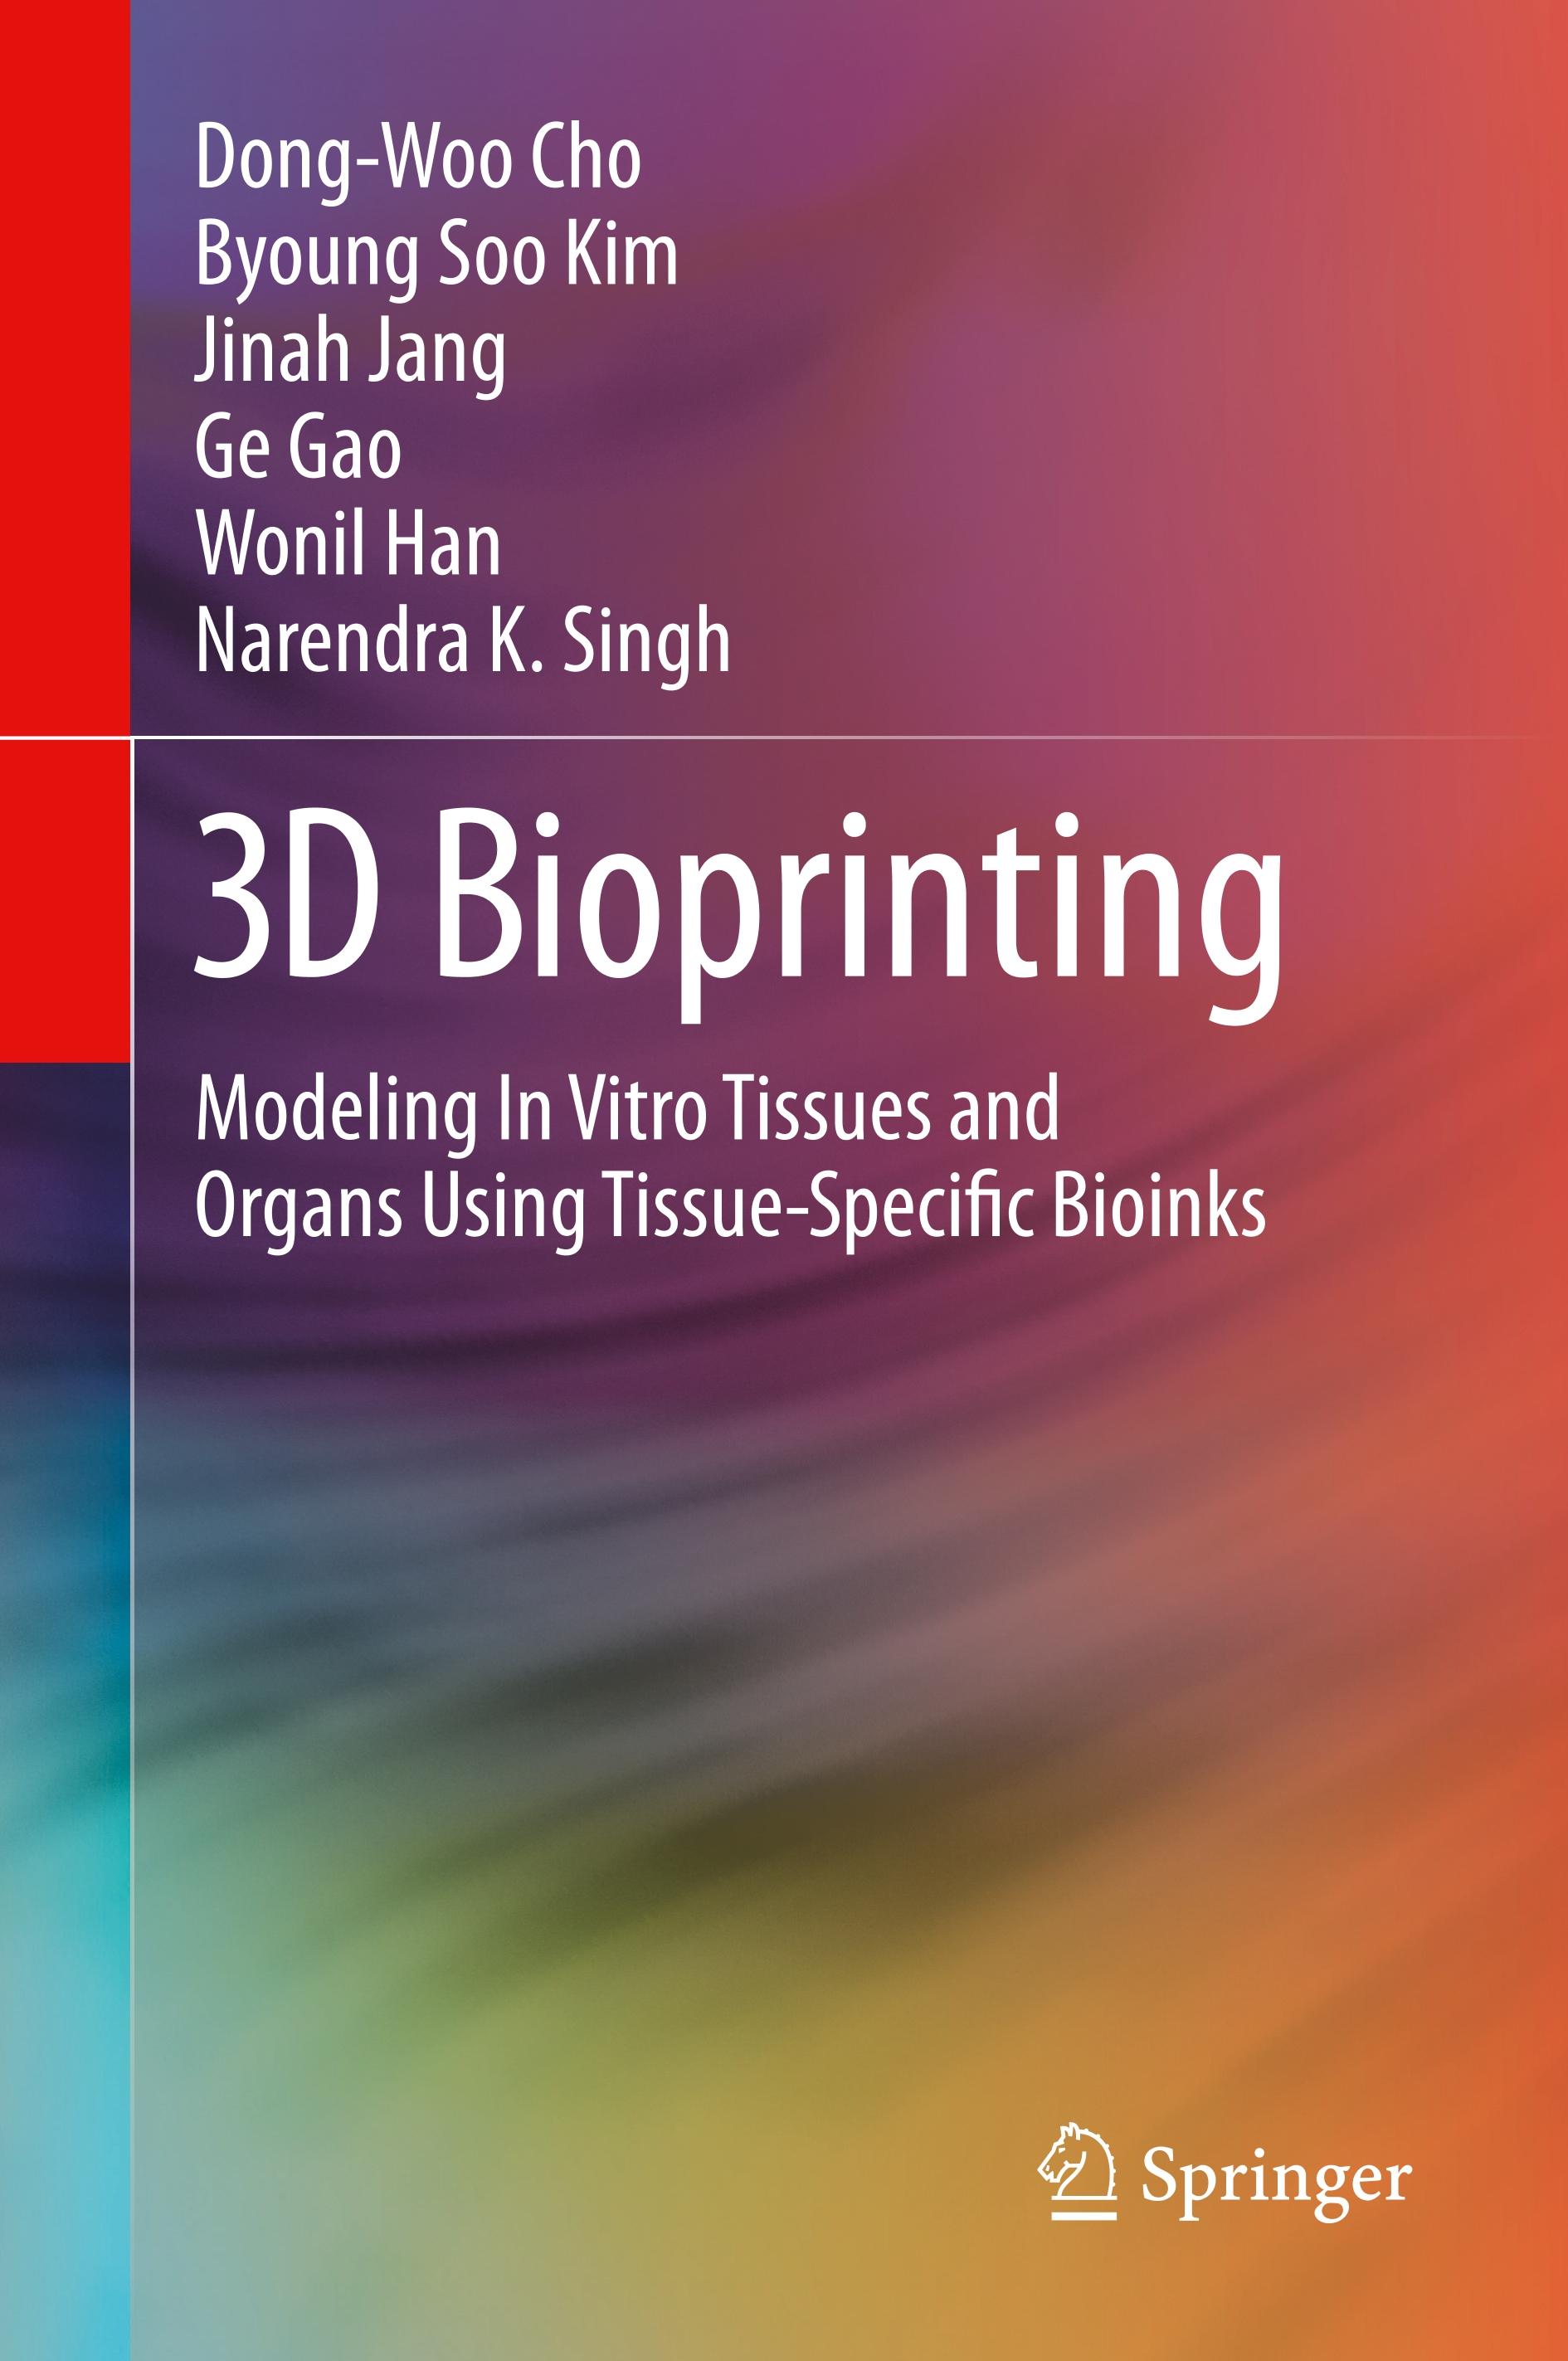 3D Bioprinting - Dong-Woo Cho|Byoung Soo Kim|Jinah Jang|Ge Gao|Wonil Han|Narendra K. Singh